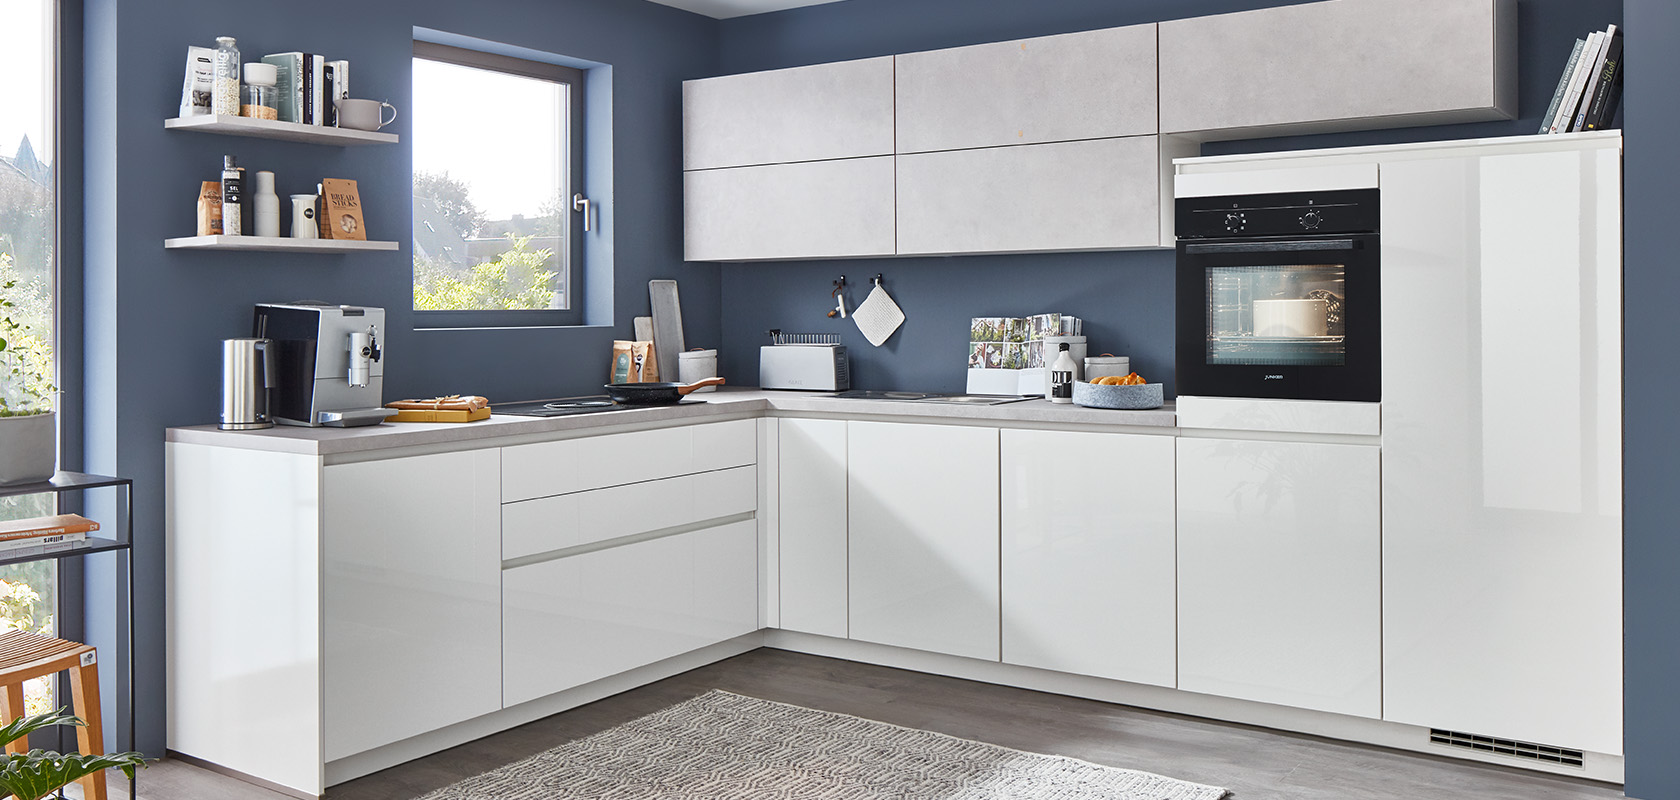 Cucina moderna con armadi bianchi, elettrodomestici eleganti e accenti grigi. Uno spazio ordinato con un'estetica minimalista e un'atmosfera confortevole e accogliente.